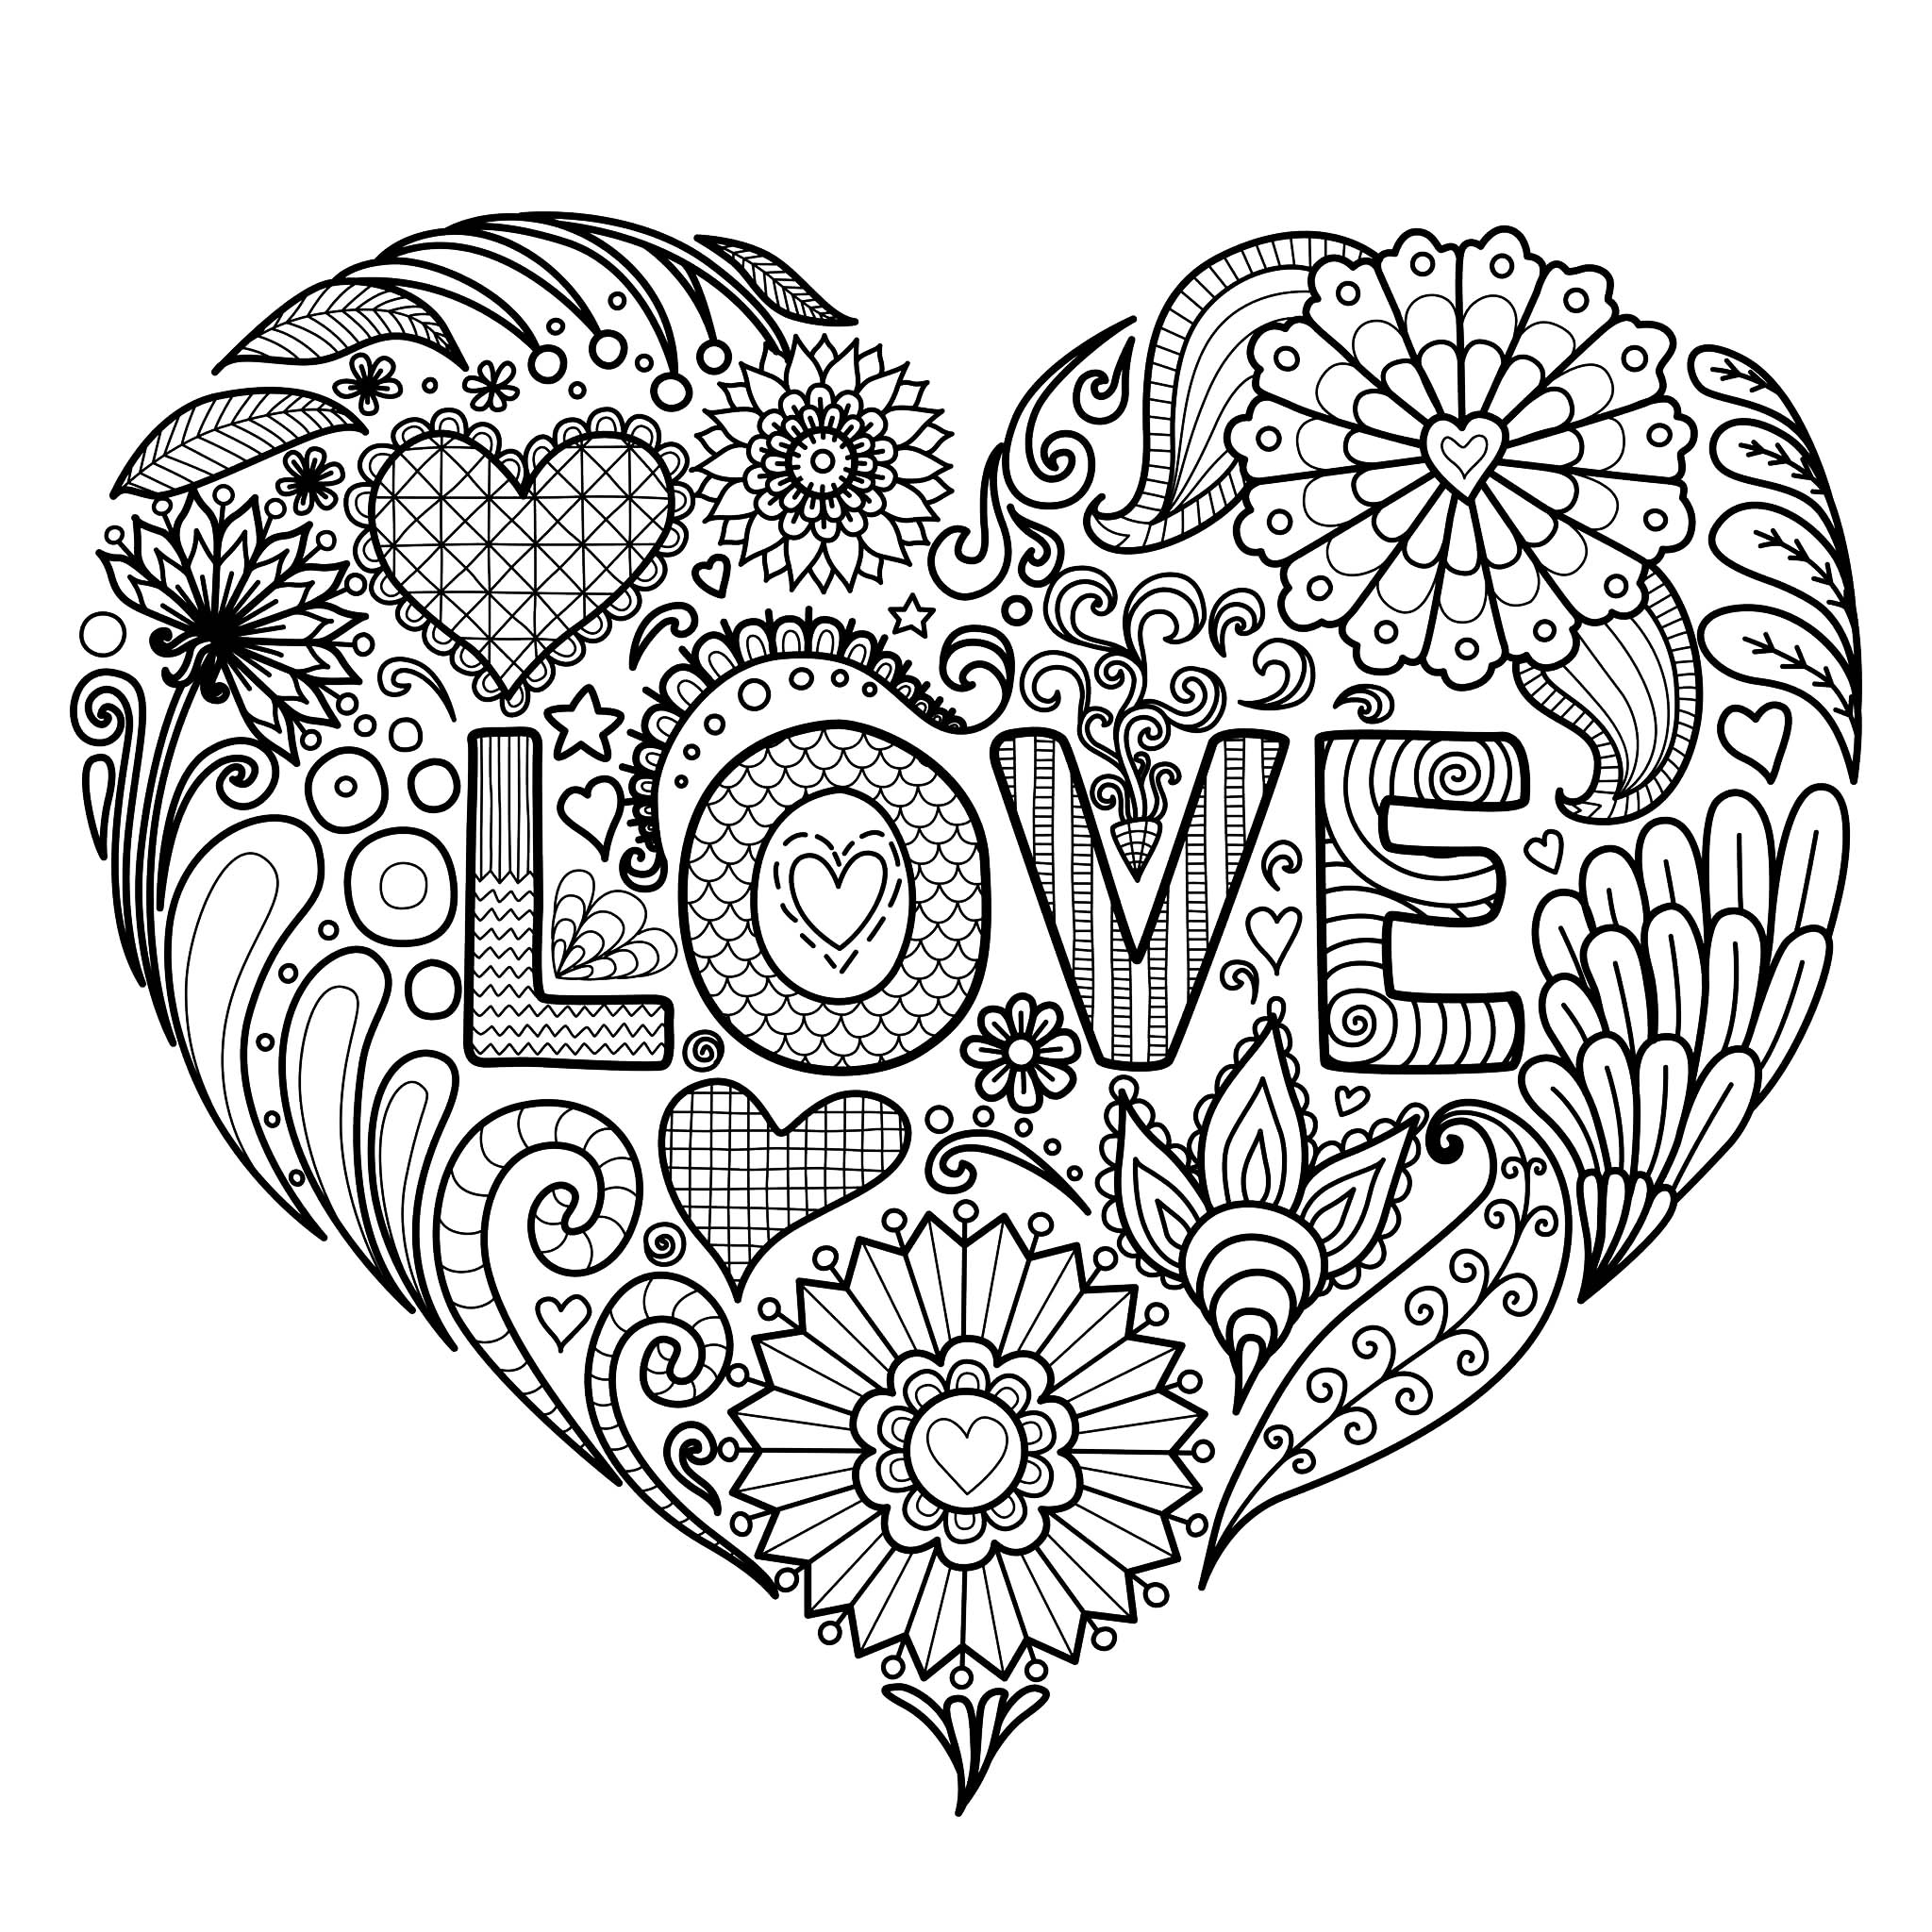 Um bonito coração com flores e o texto 'LOVE' para colorir, Artista : Bimdeedee   Fonte : 123rf